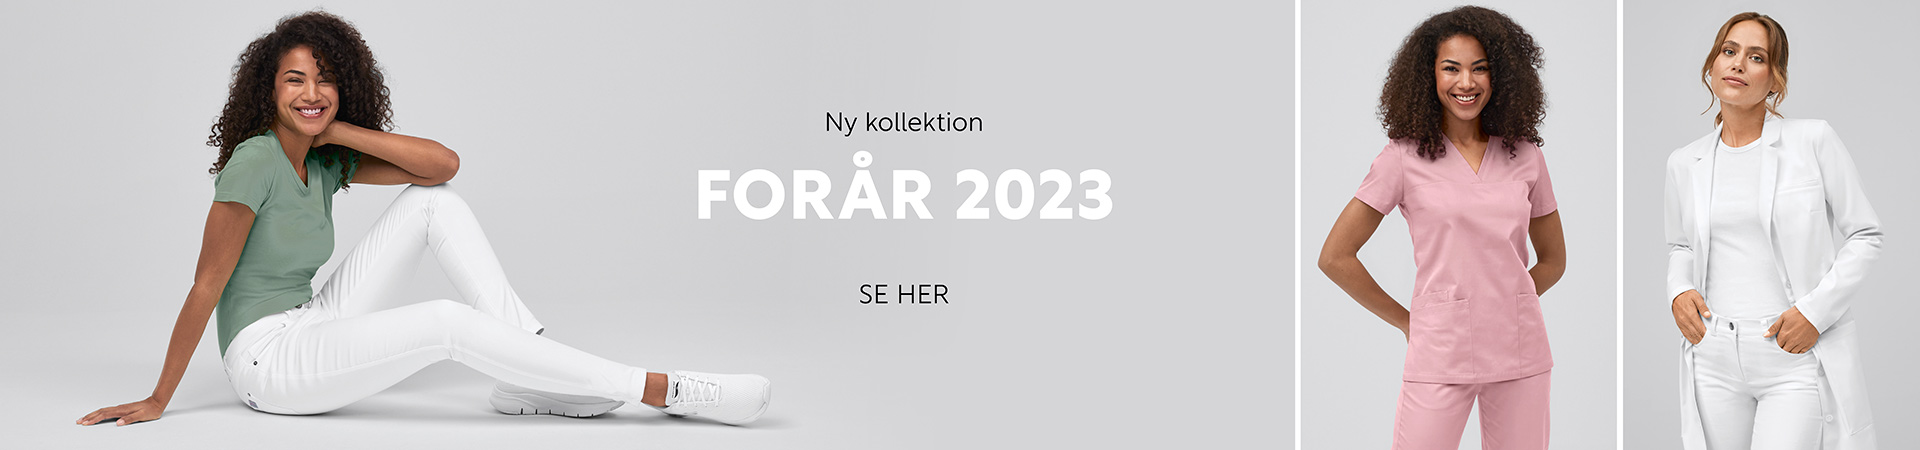 Ny Kollektion forår 2022